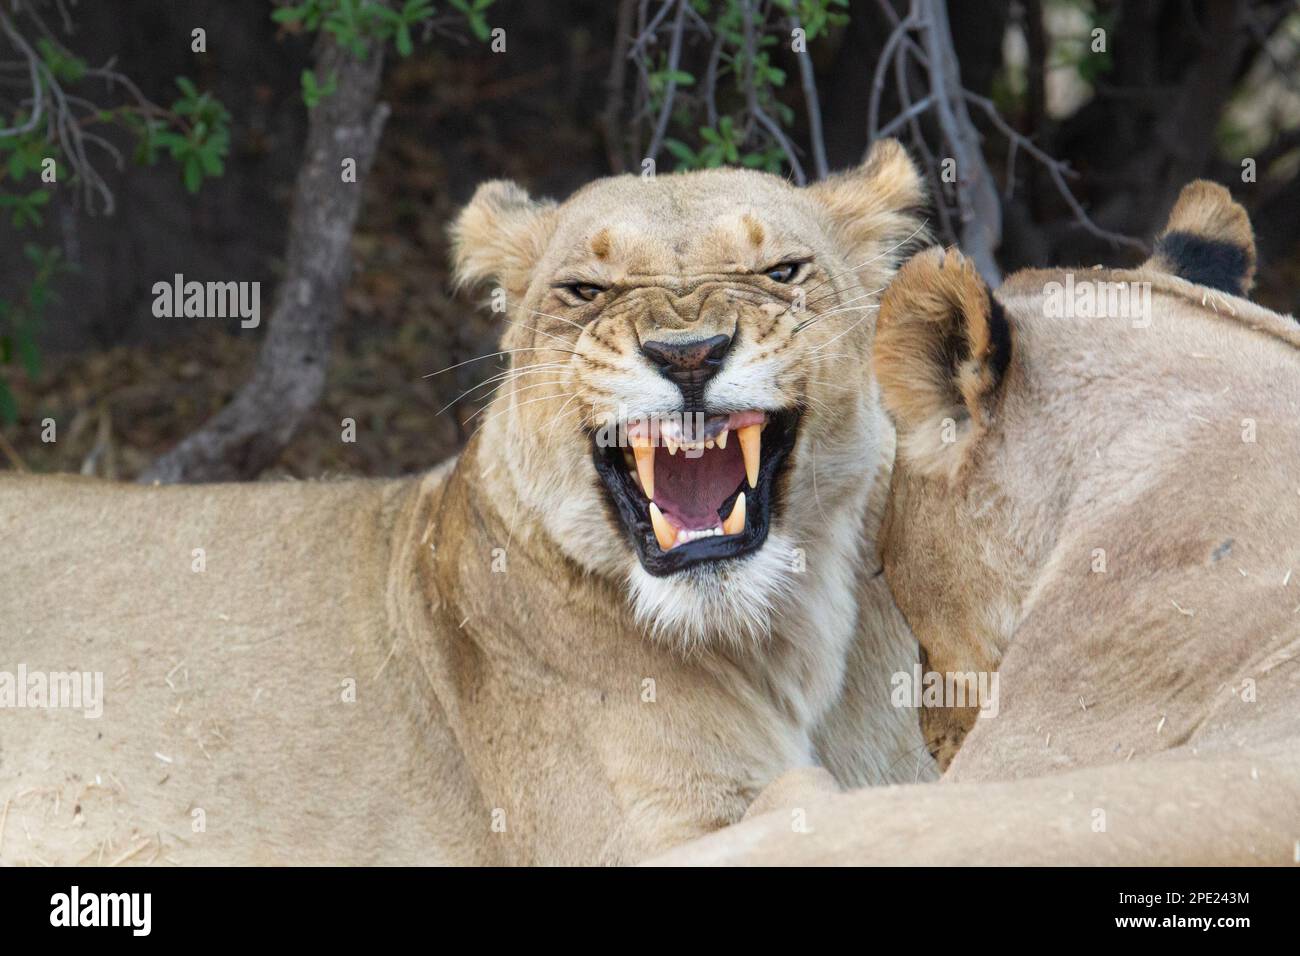 Das Porträt von Löwin, Panthera leo, knurrt vor der Kamera. Porträt von ihrem Gesicht, Kopf nach vorne. Aggressives Verhalten. Okavango Delta, Botsuana, Afrika Stockfoto